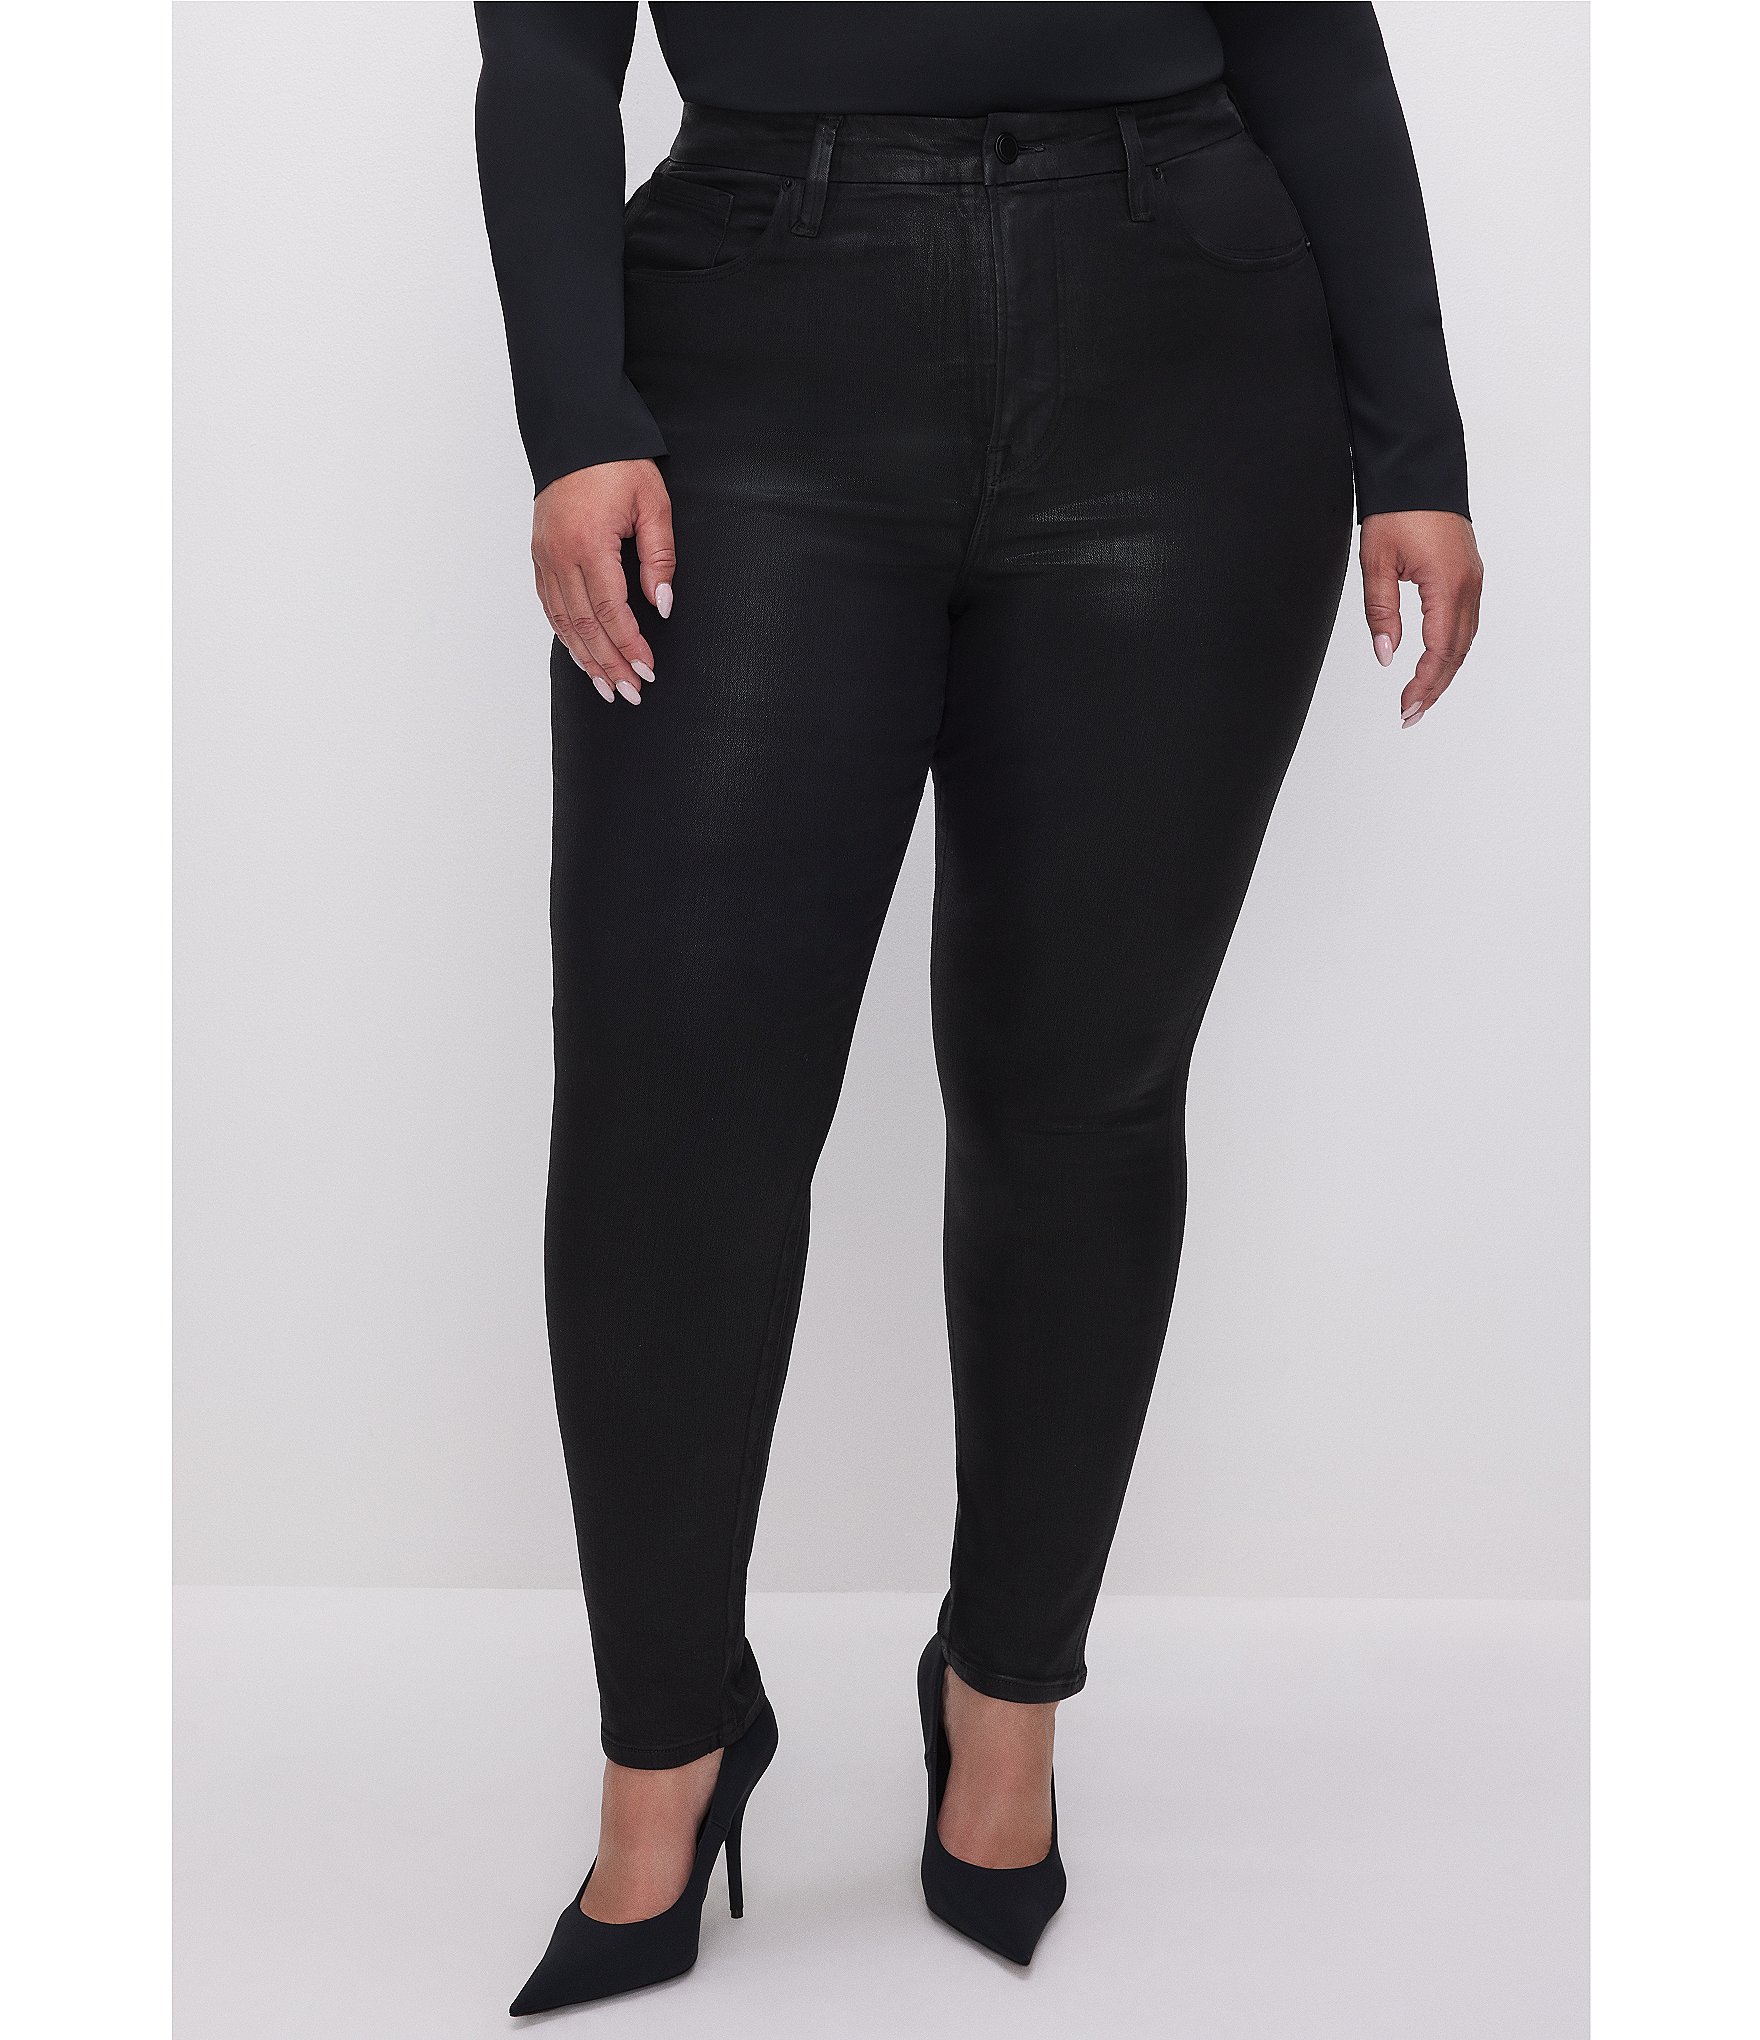 Sale & Clearance Black Women's Plus-Size Jeans & Denim